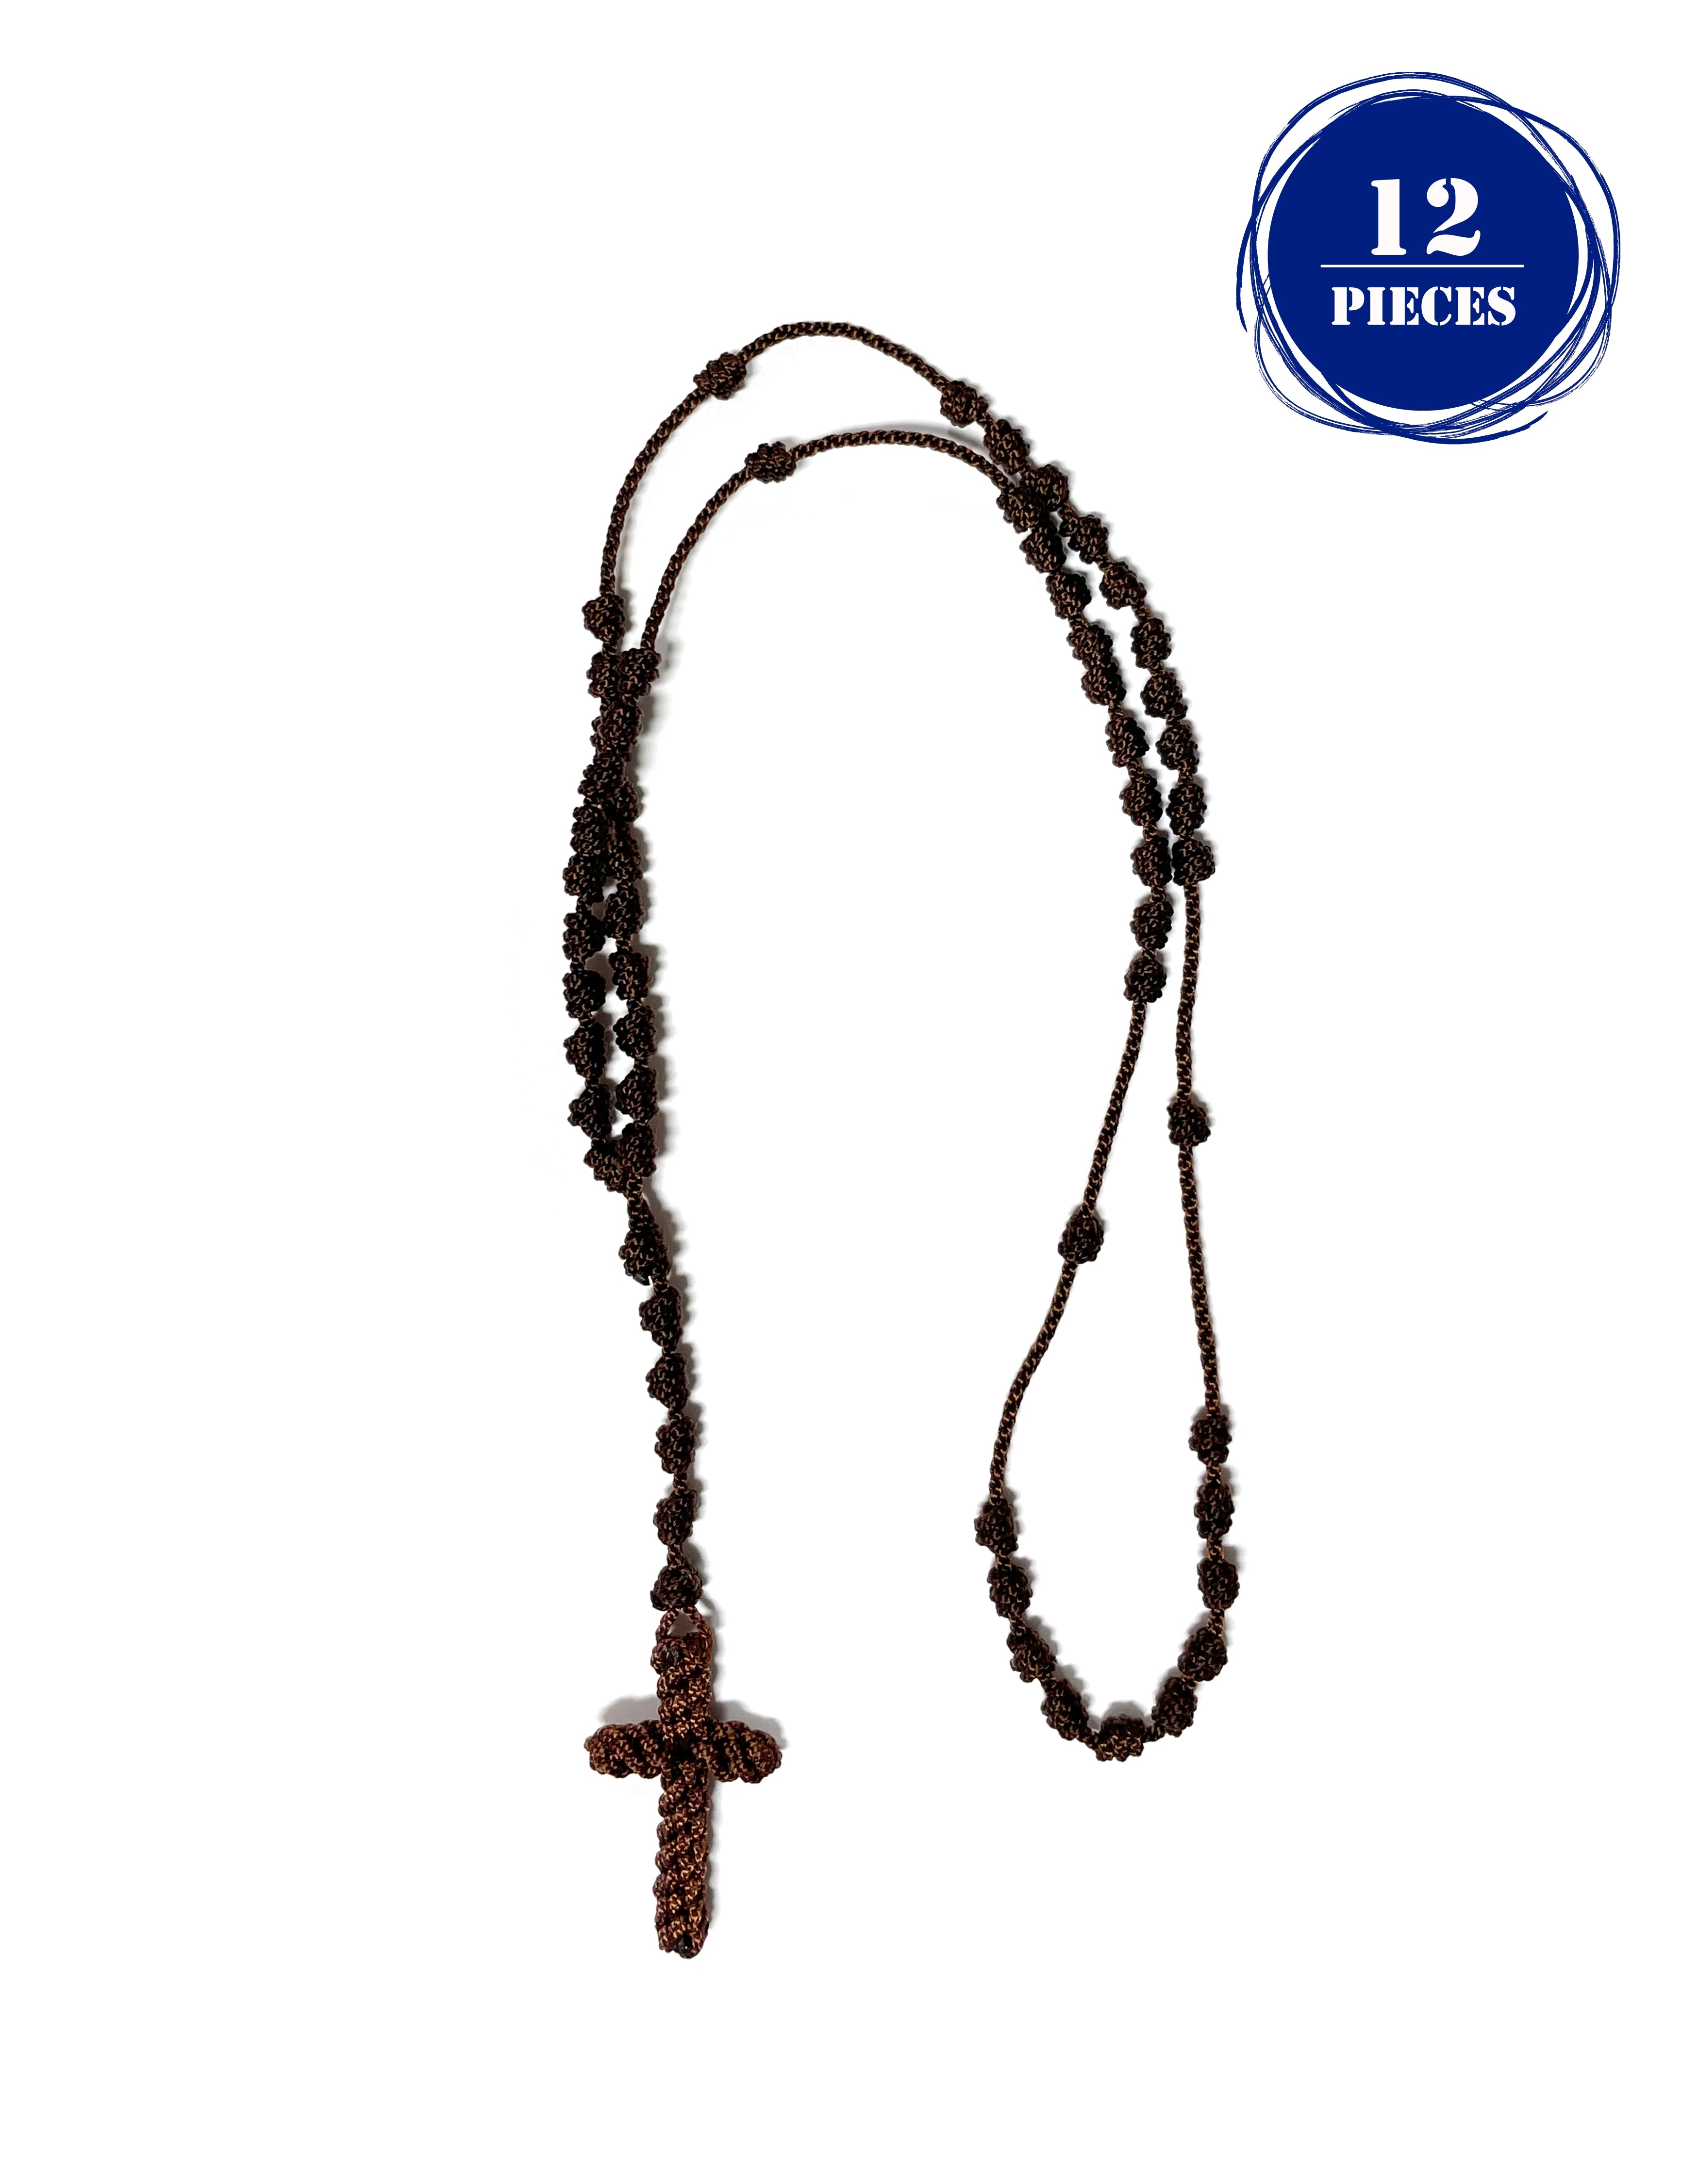 Knotted rosary - cord rosary, thread rosary - Handmade Rosary. Rosario